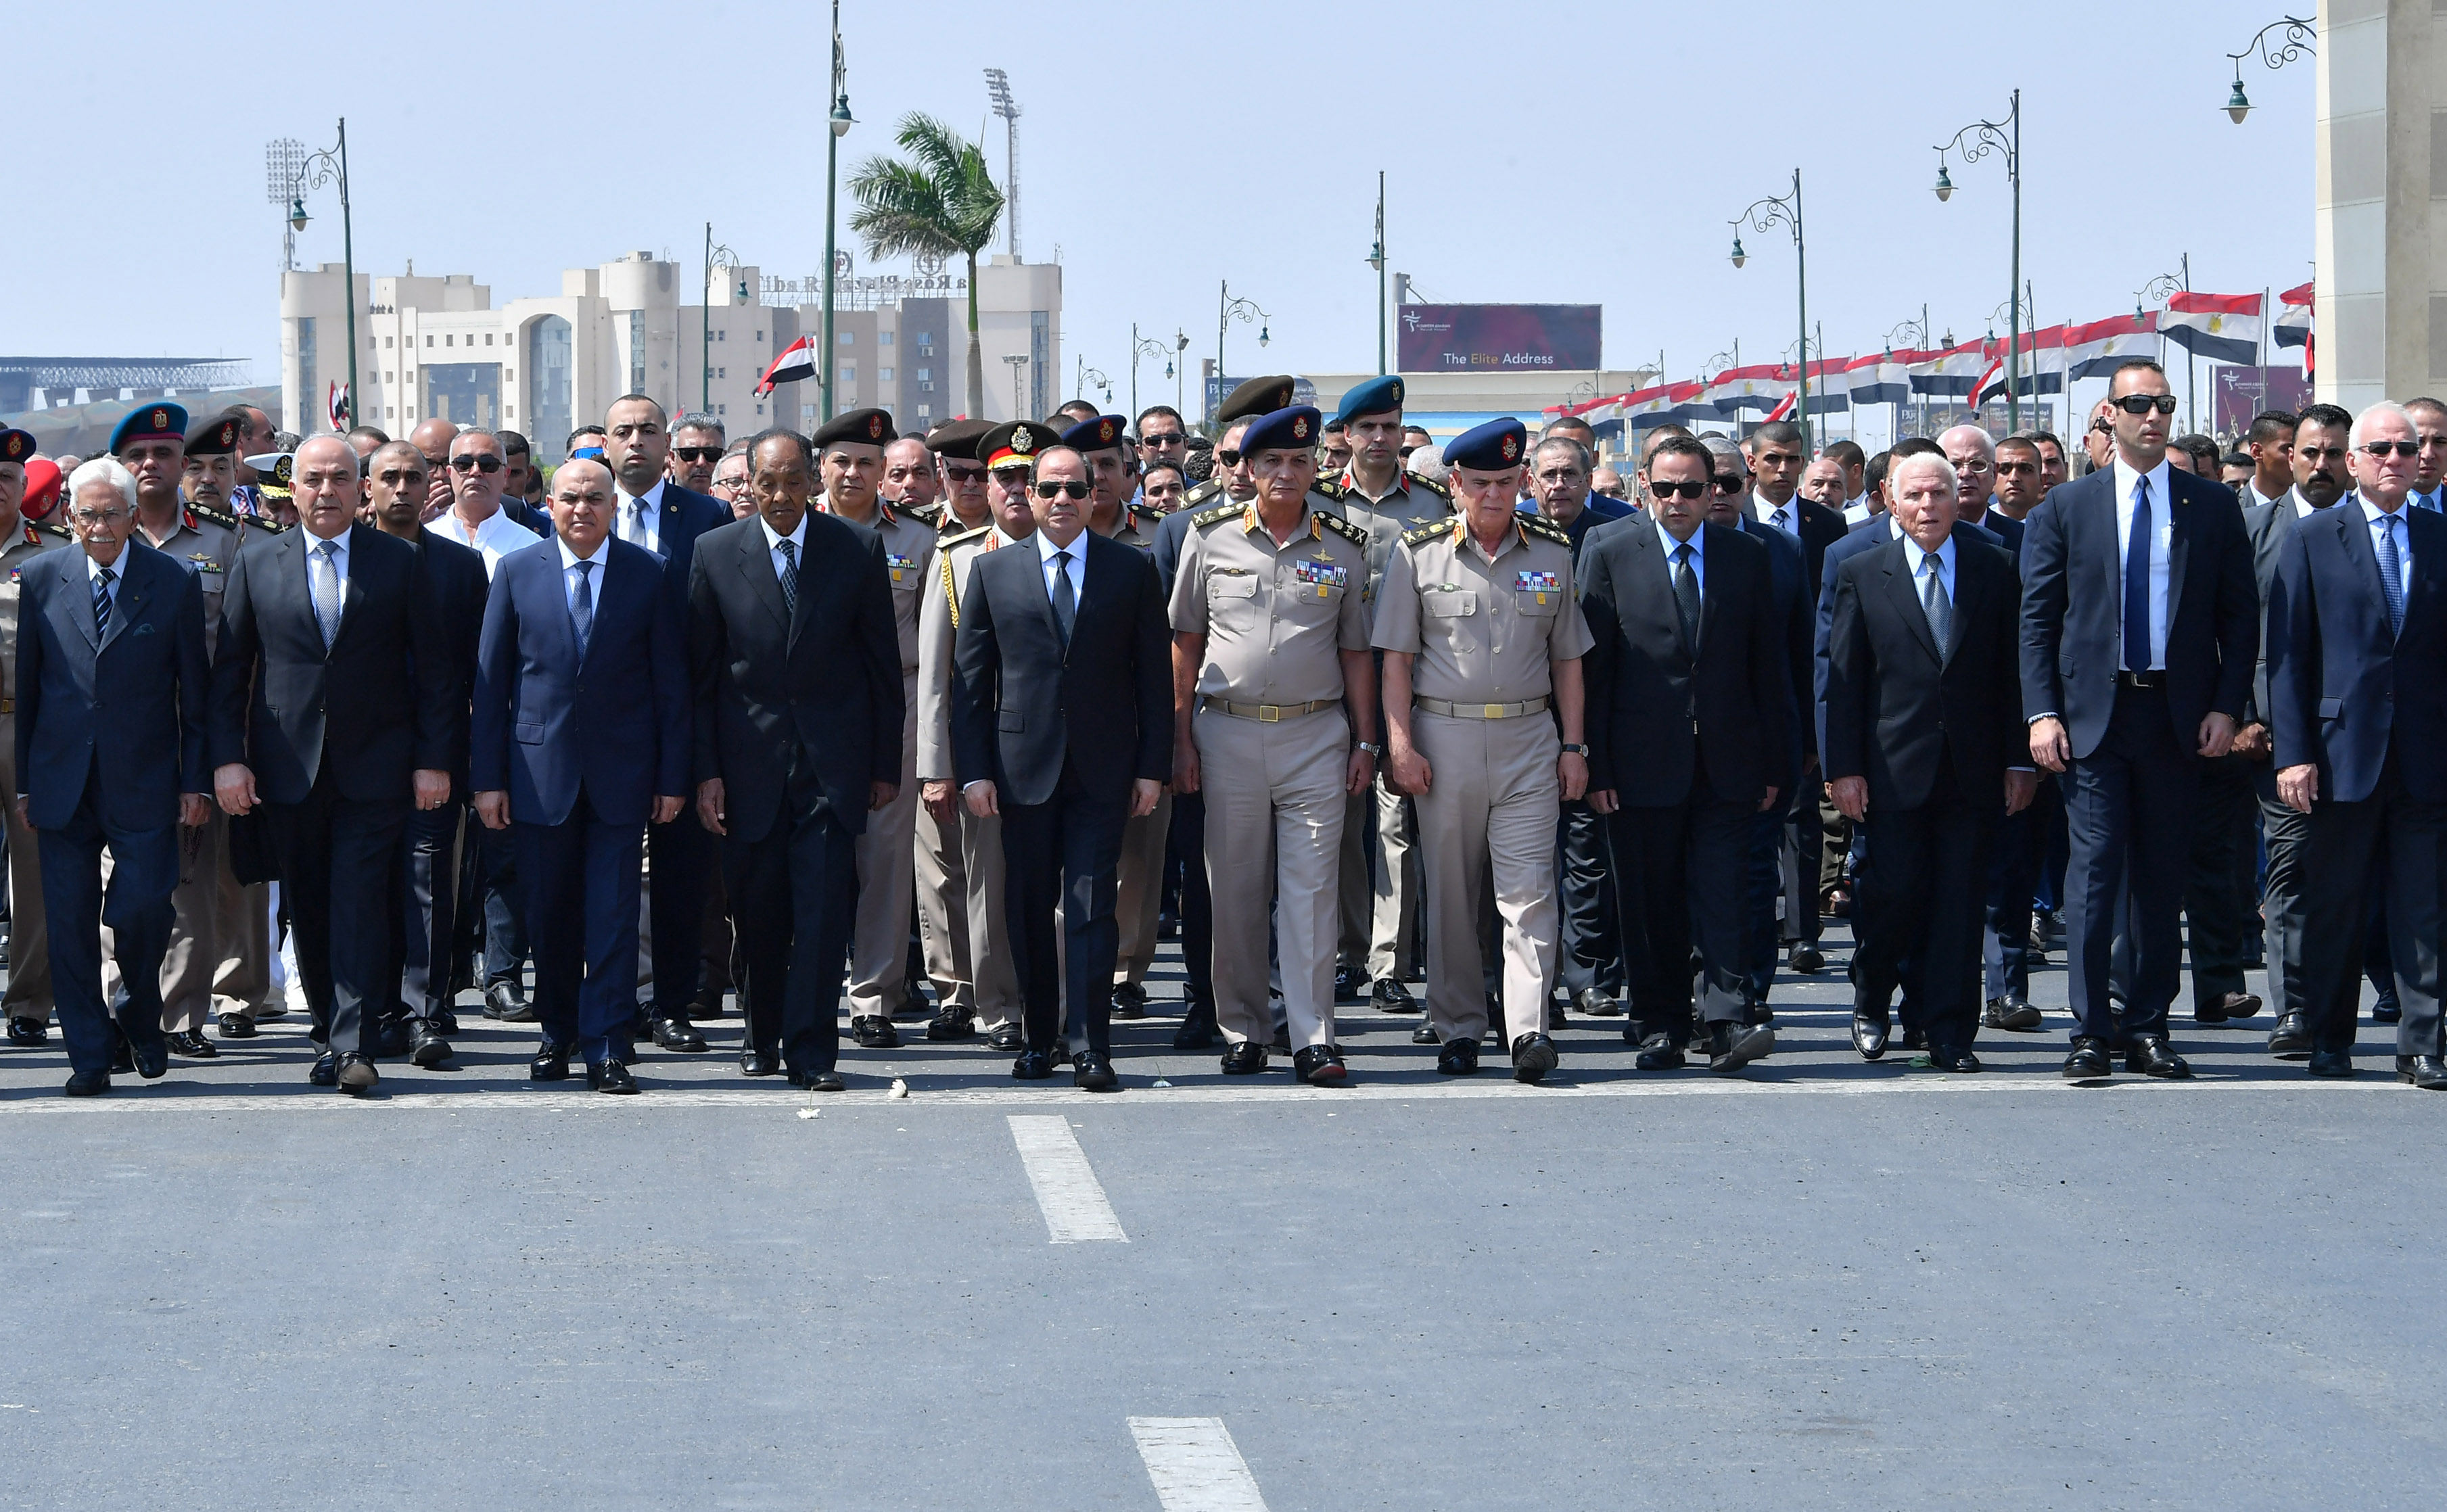   الرئيس السيسي يتقدم الجنازة العسكرية للفريق إبراهيم عبد الغفور العرابي